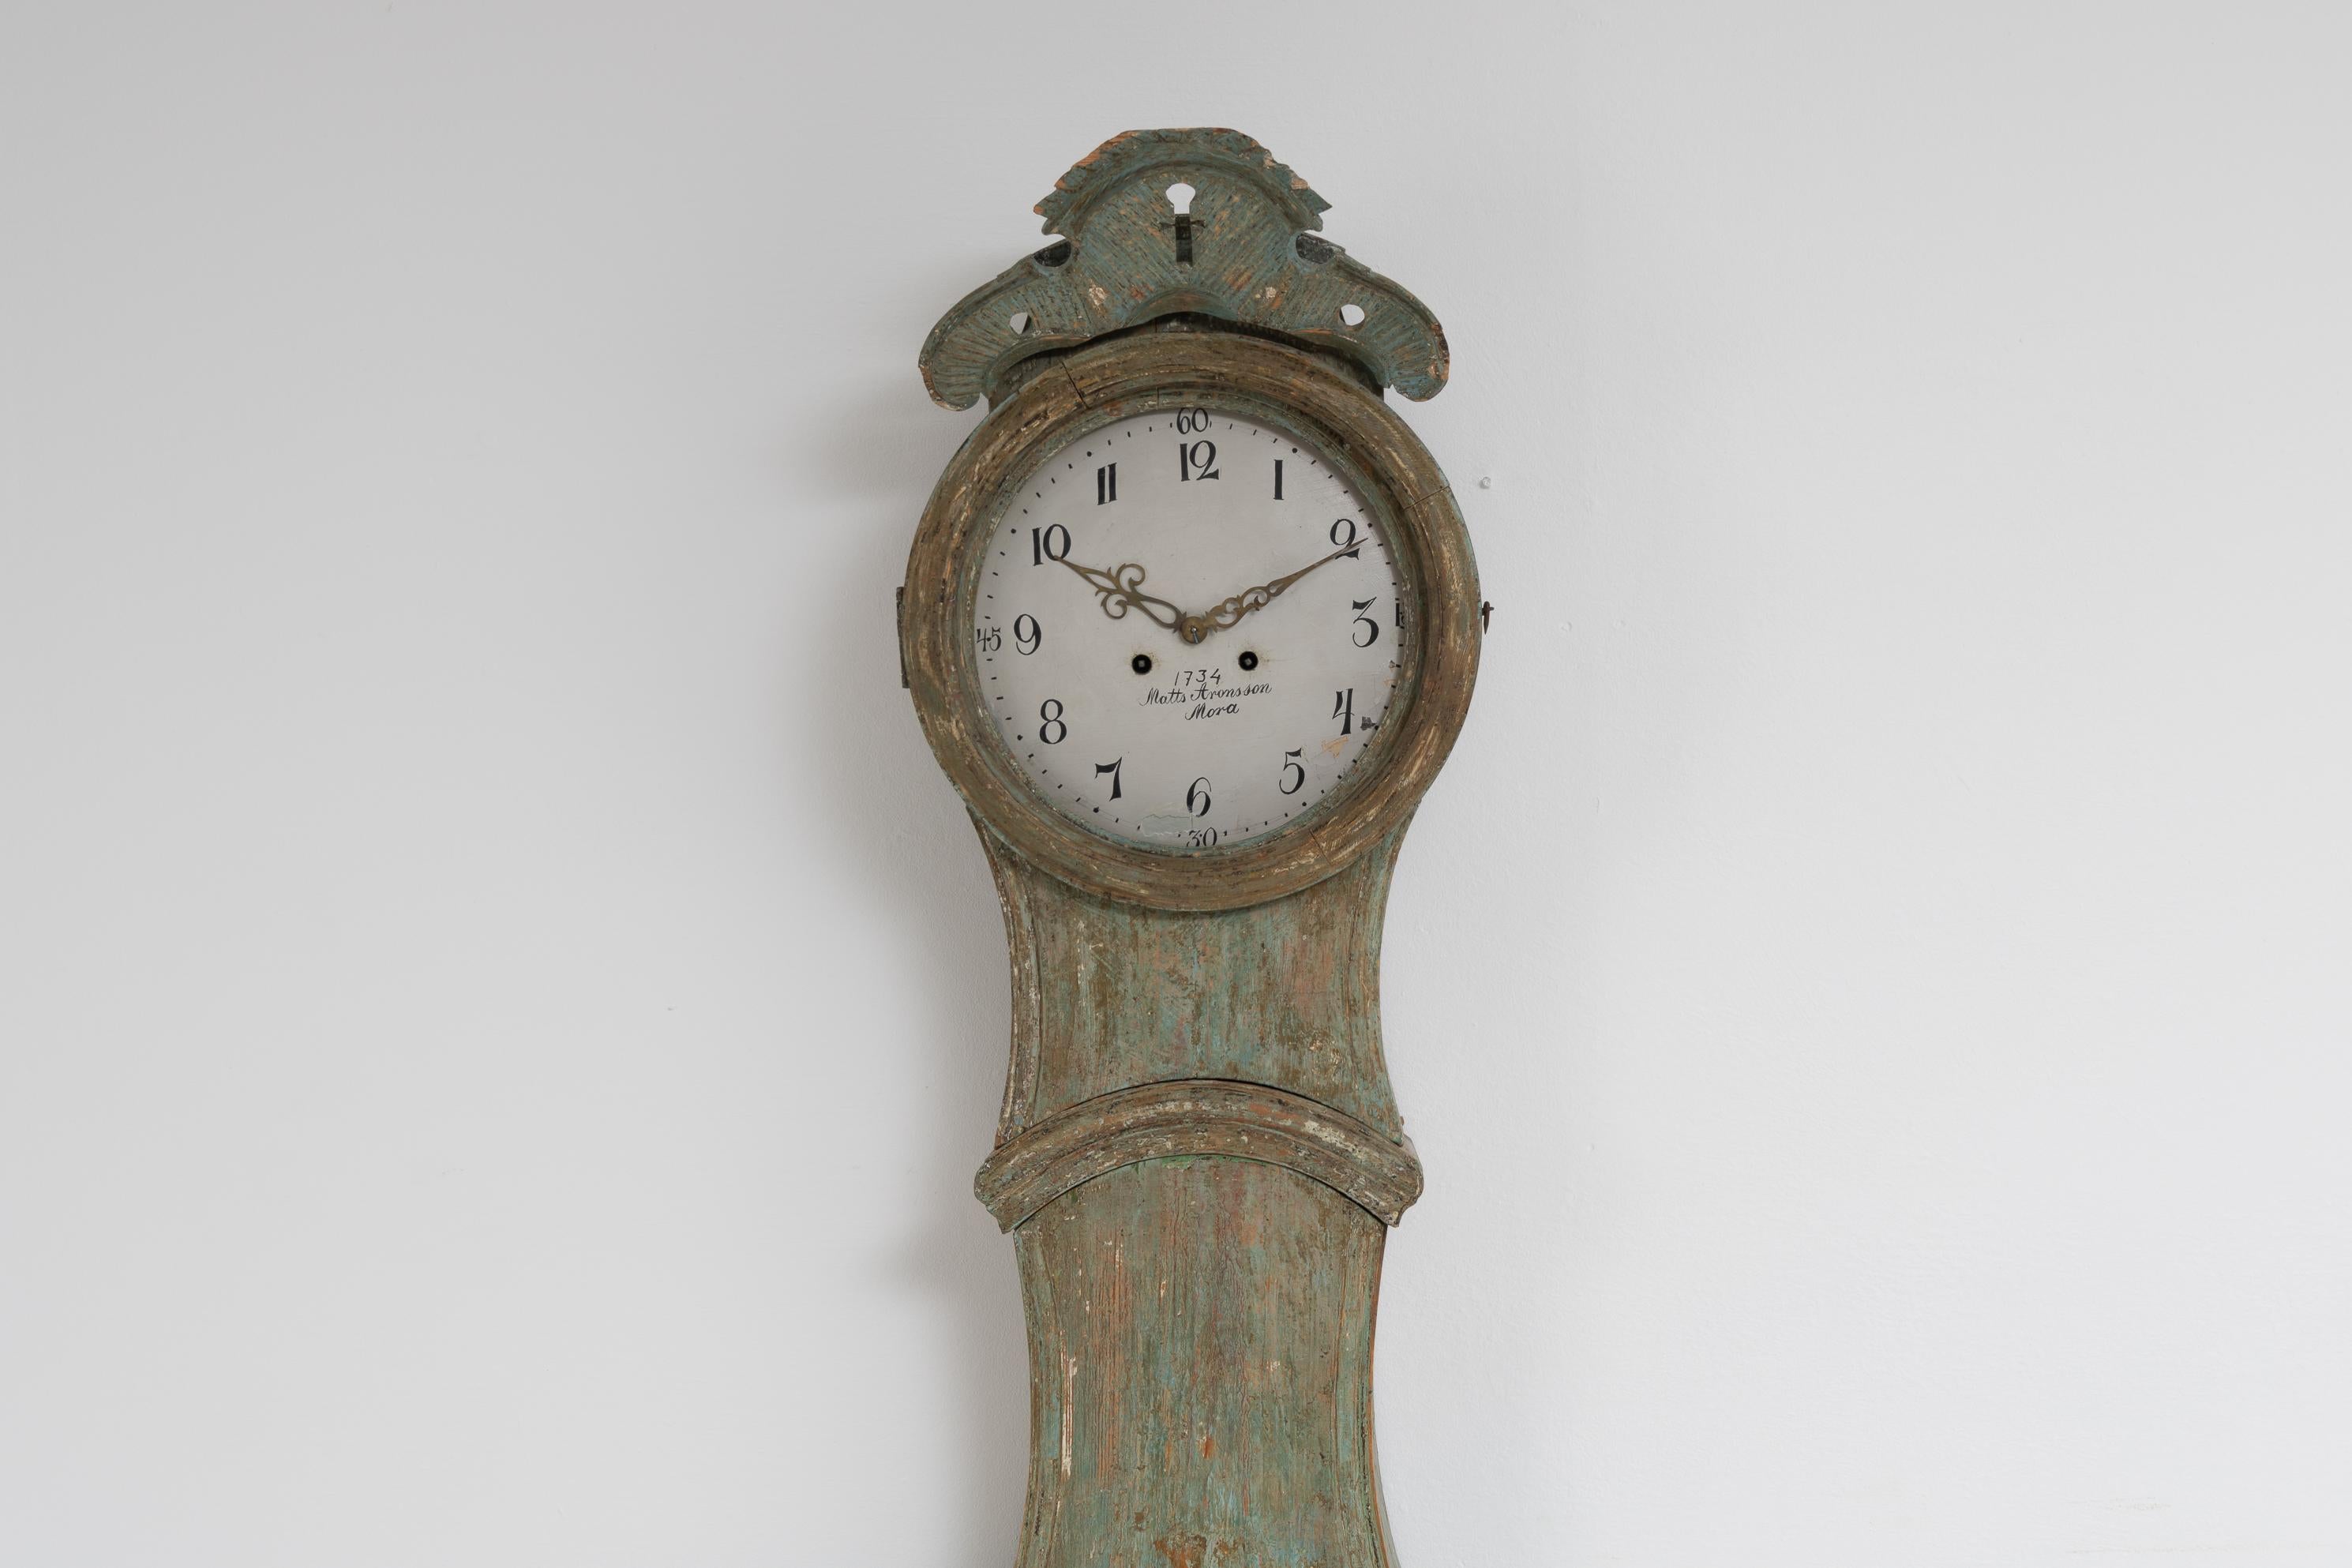 Horloge suédoise classique à long boîtier provenant de la province de Medelpad, dans le nord de la Suède. Fabriqué vers 1820 avec la forme rococo classique et des décorations en bois sculpté à la main. La décoration en forme de coquille au sommet de